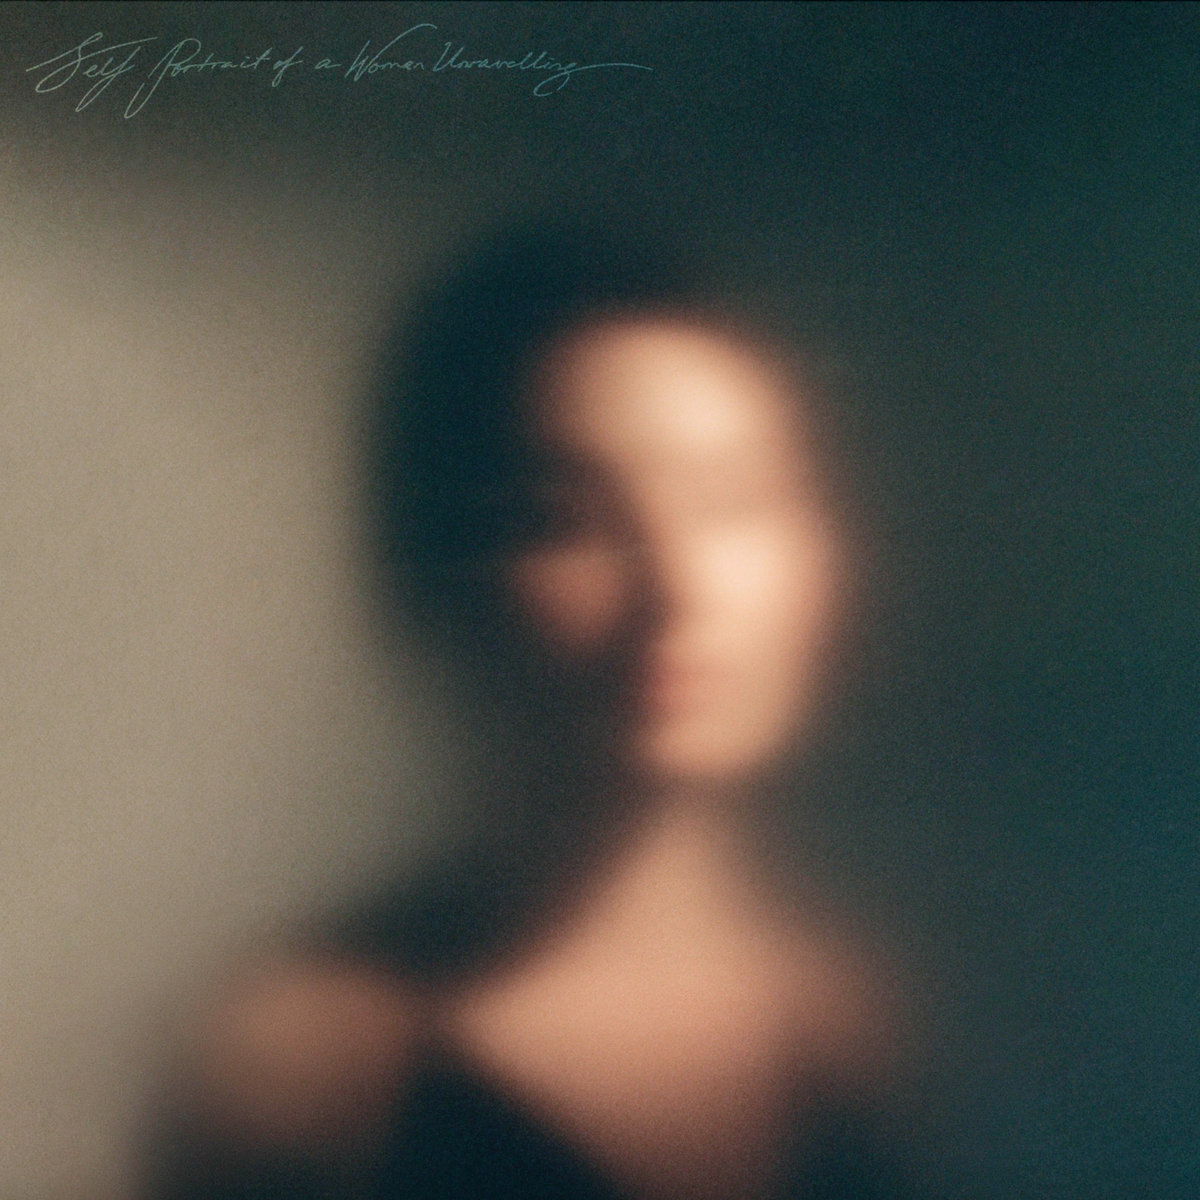 Self Portrait Of A Woman Unravelling  (Vinyl)